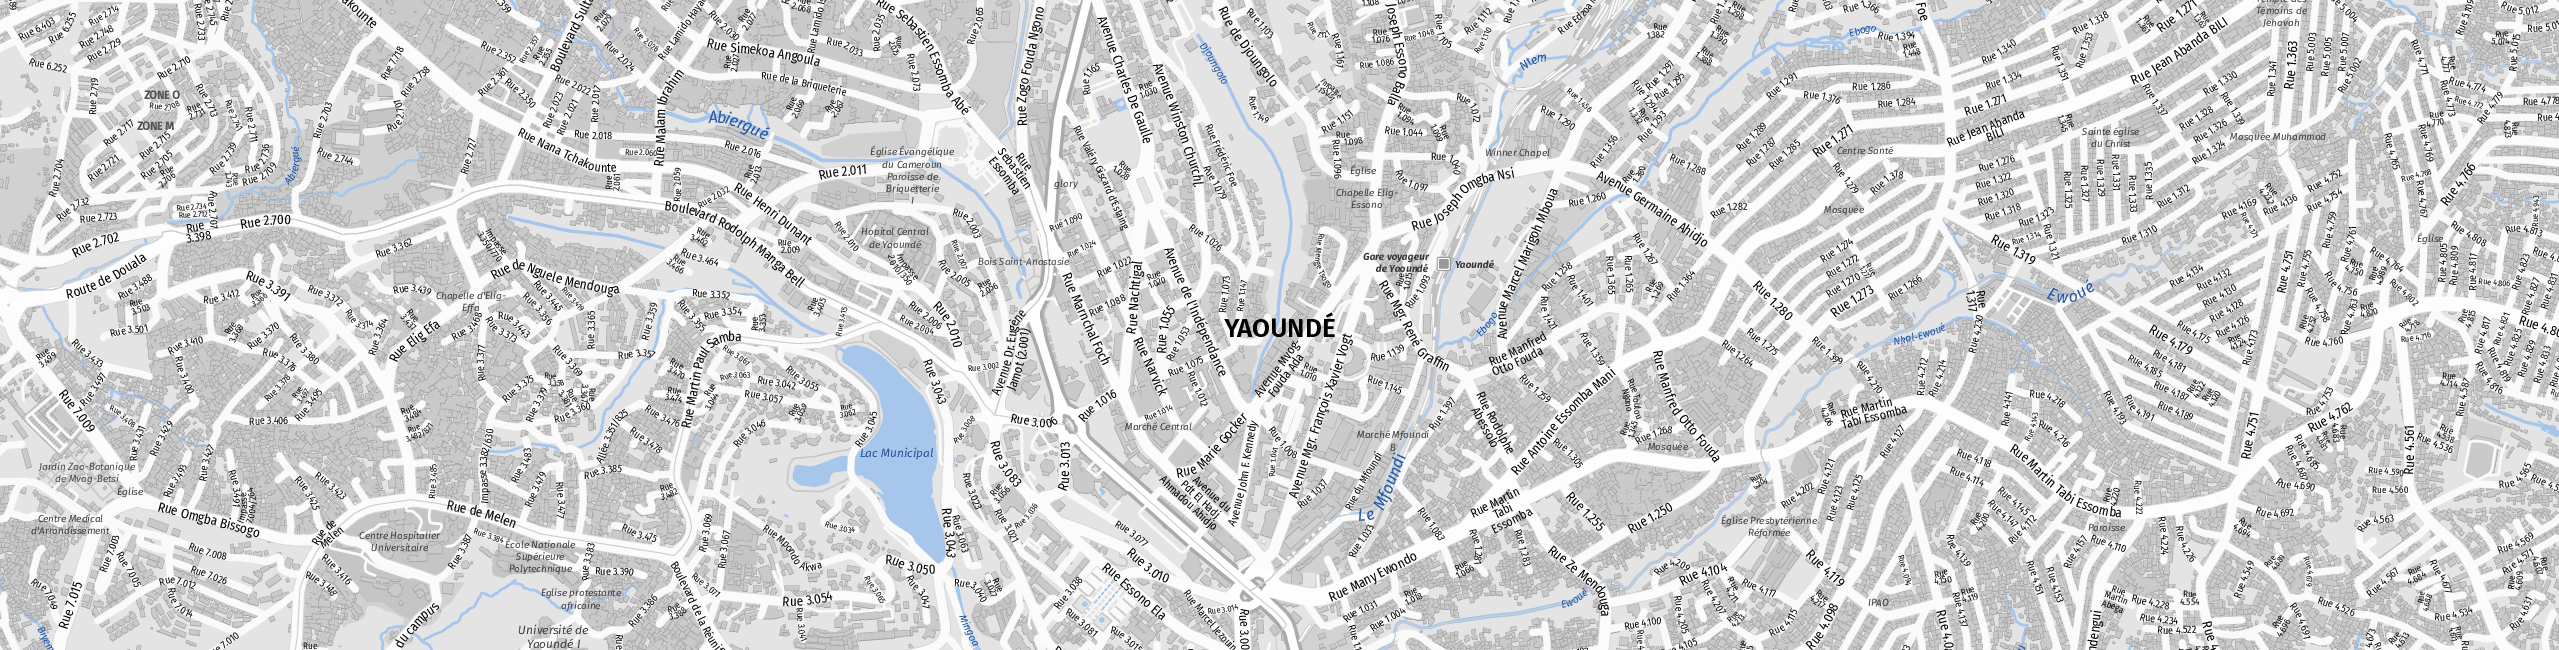 Stadtplan Yaounde zum Downloaden.